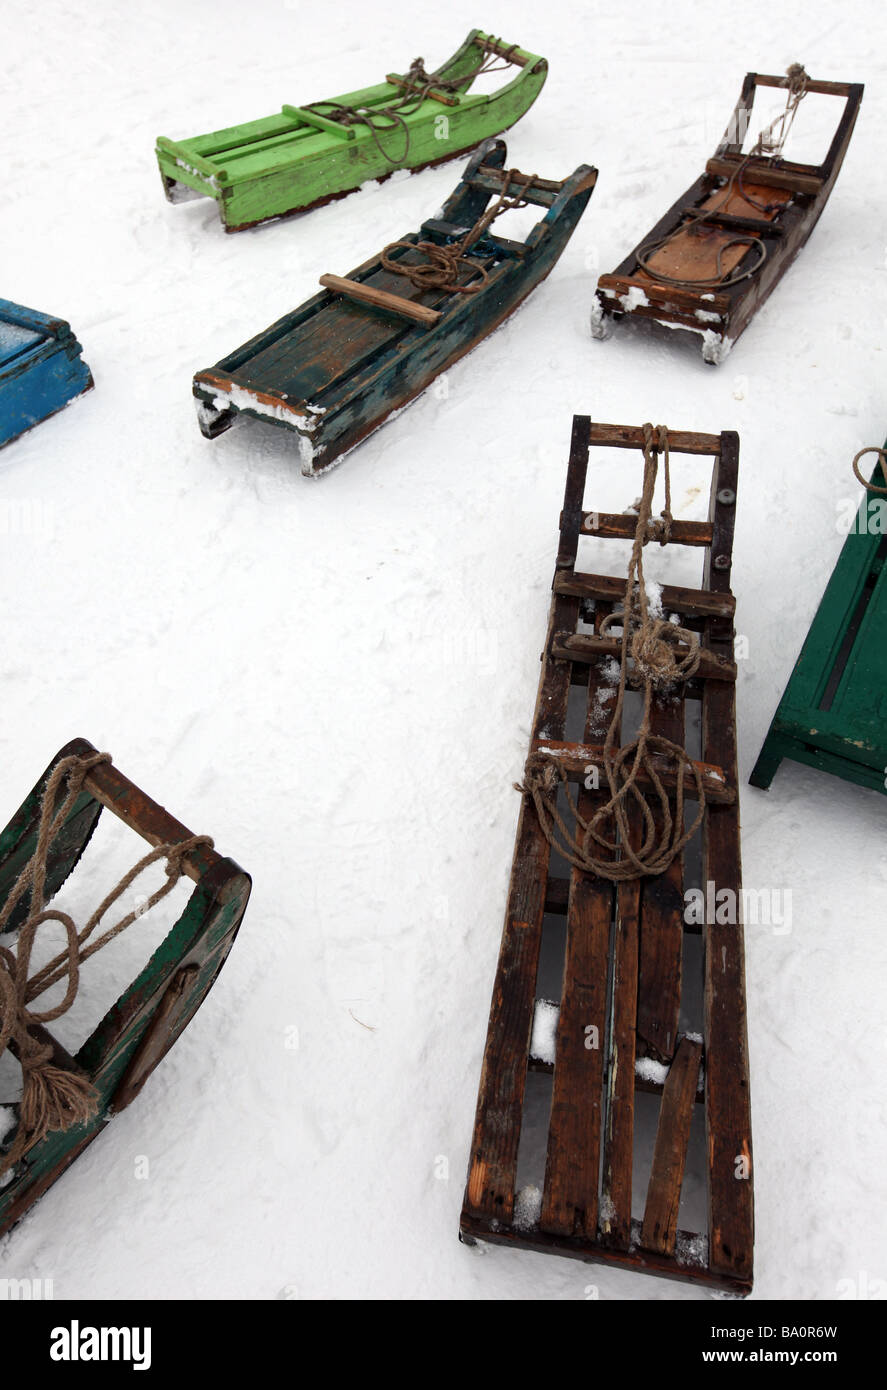 Schlitten, mit denen vorbeilaufenden Besucher rund um die Ski-Felder von Gulmarg Kaschmir Indien schleppen liegen im Schnee warten auf Kunden. Stockfoto